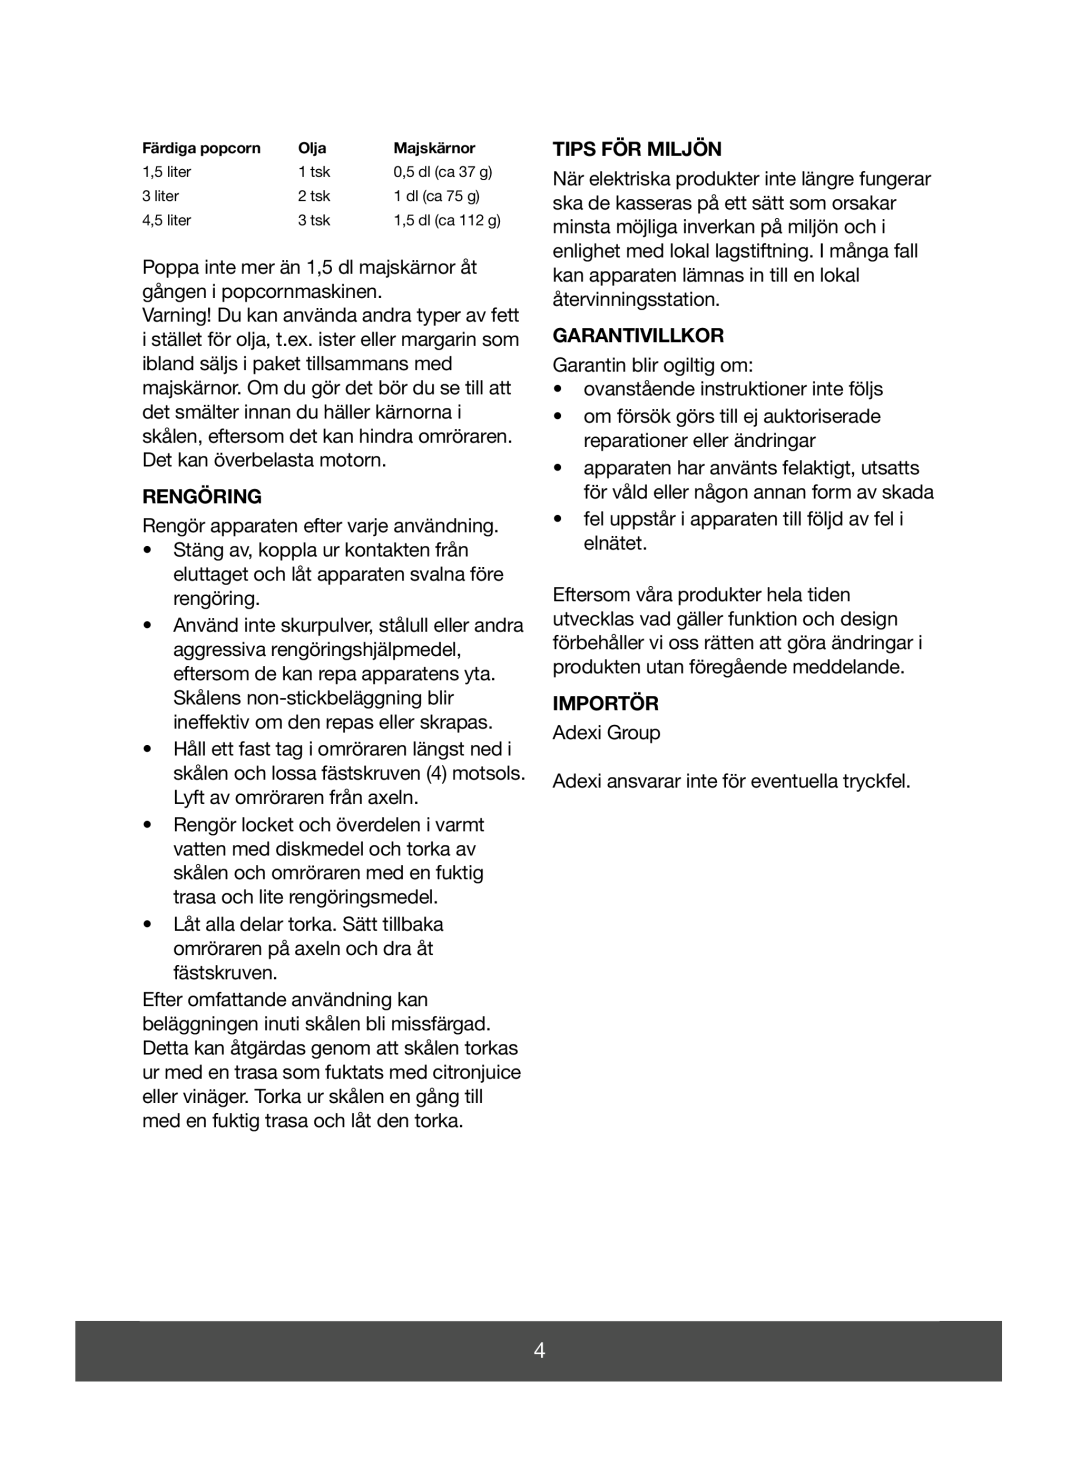 Melissa 643-041 manual Rengöring, Tips För Miljön, Garantivillkor, Importör 